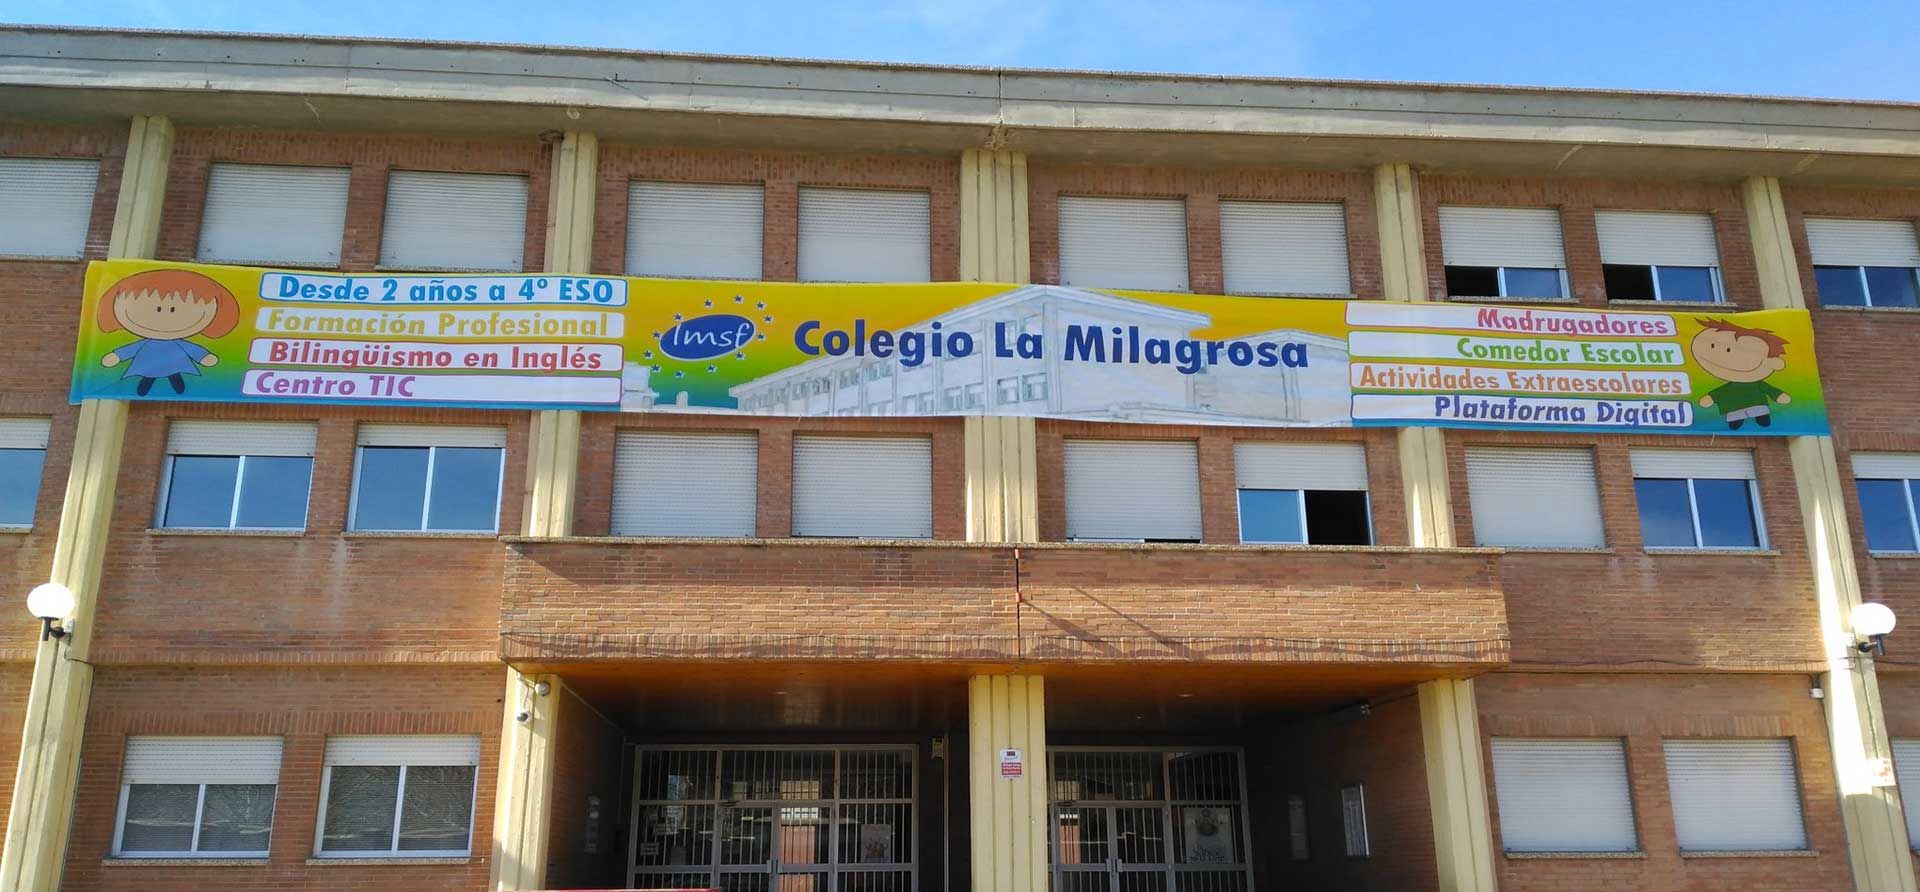 Oferta Educativa Colegio La Milagrosa Y Santa Florentina Valladolid